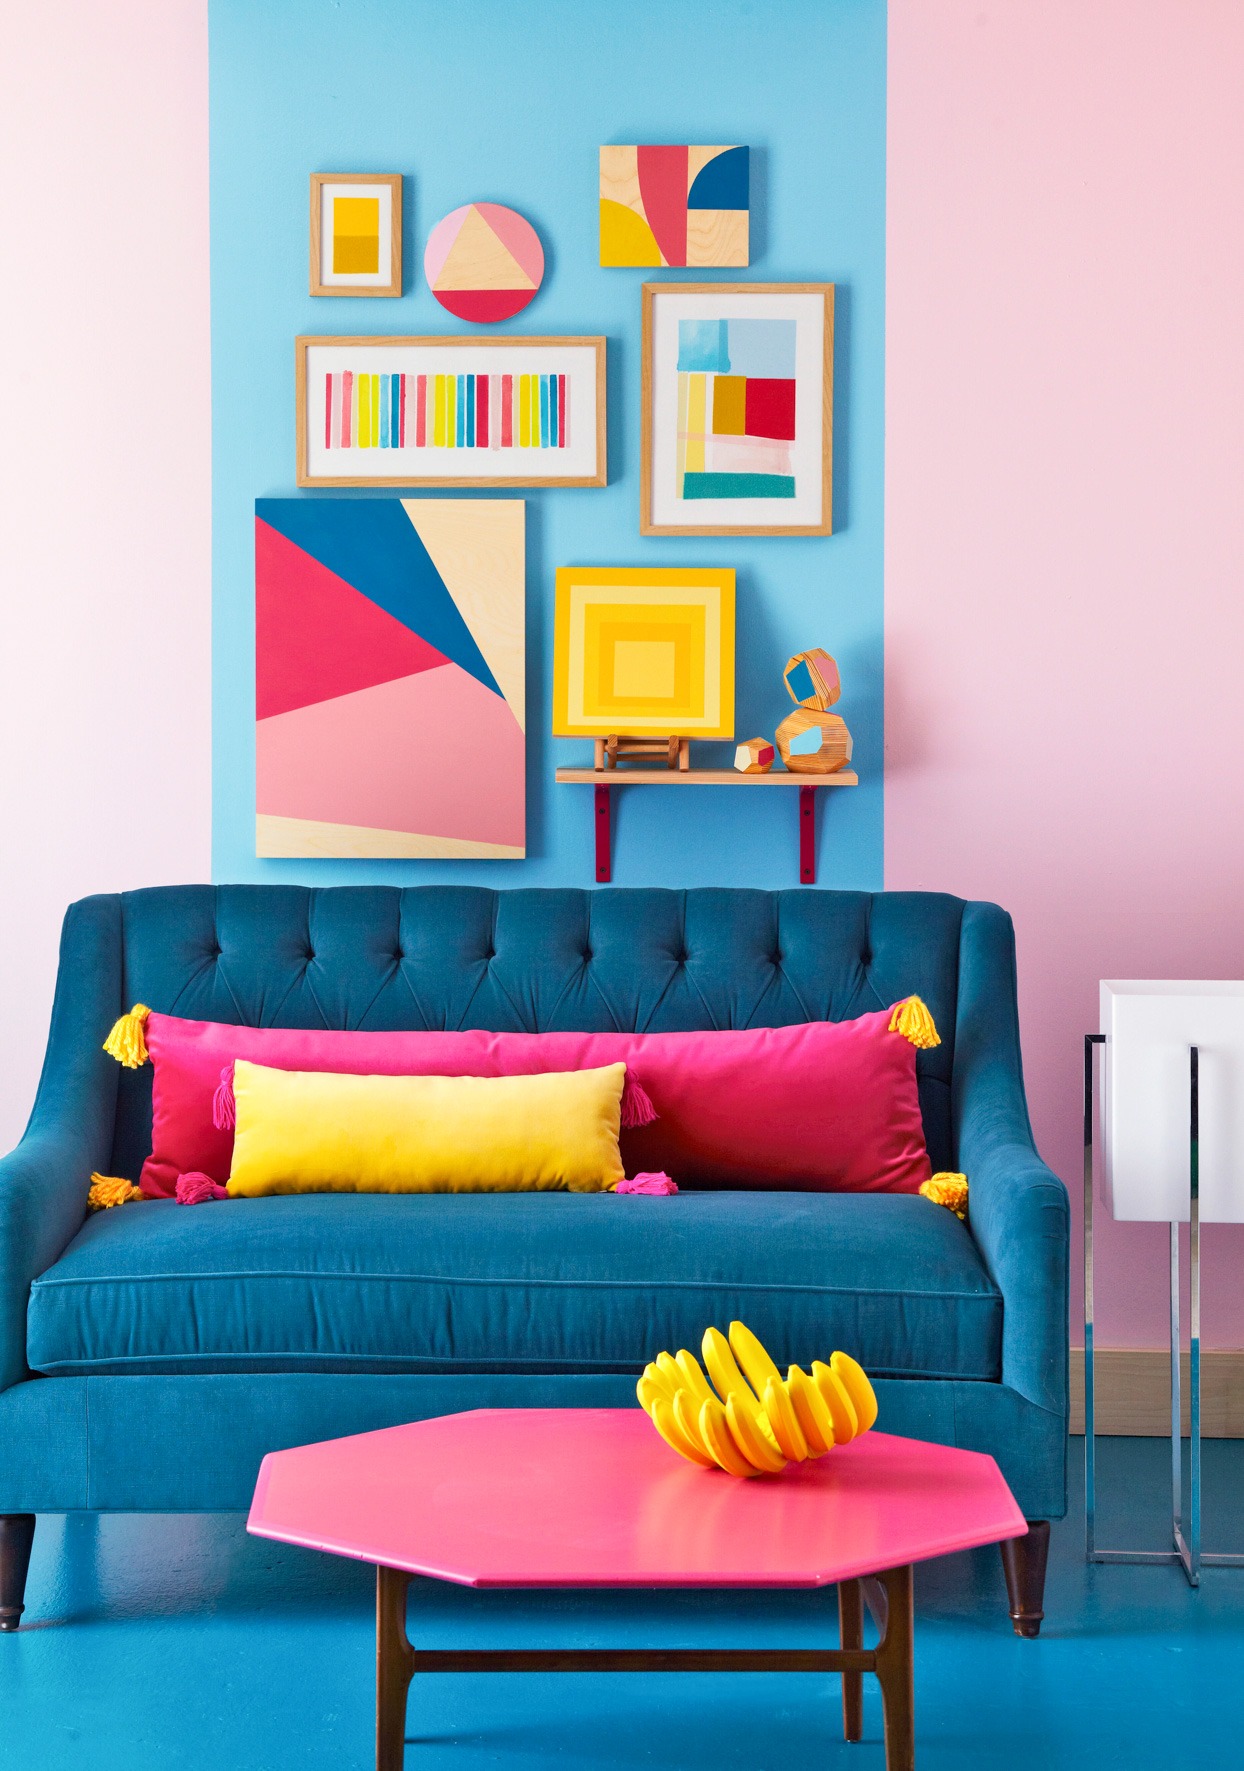 Bạn hãy kết hợp cả màu sơn tường nổi bật như hồng, xanh lam,... với các tác phẩm nghệ thuật chủ đề hình học, song song với đó là nội thất bắt mắt như sofa, bàn nước trong hình, chắc chắn sẽ làm cho phòng khách siêu nổi bật.